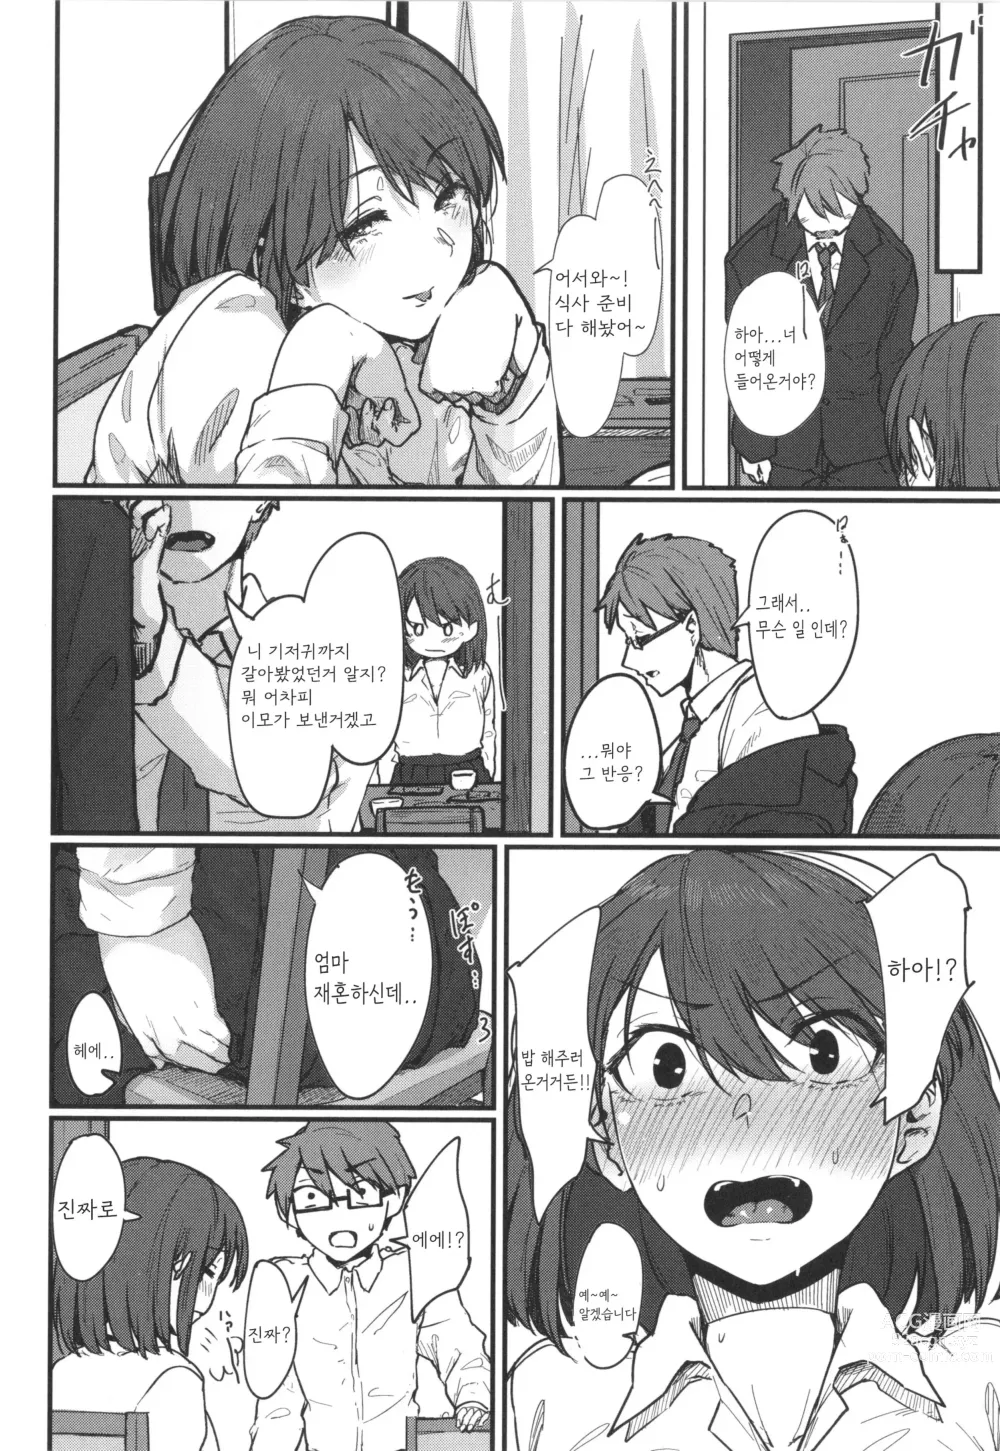 Page 4 of manga Hatsukoi no Hito